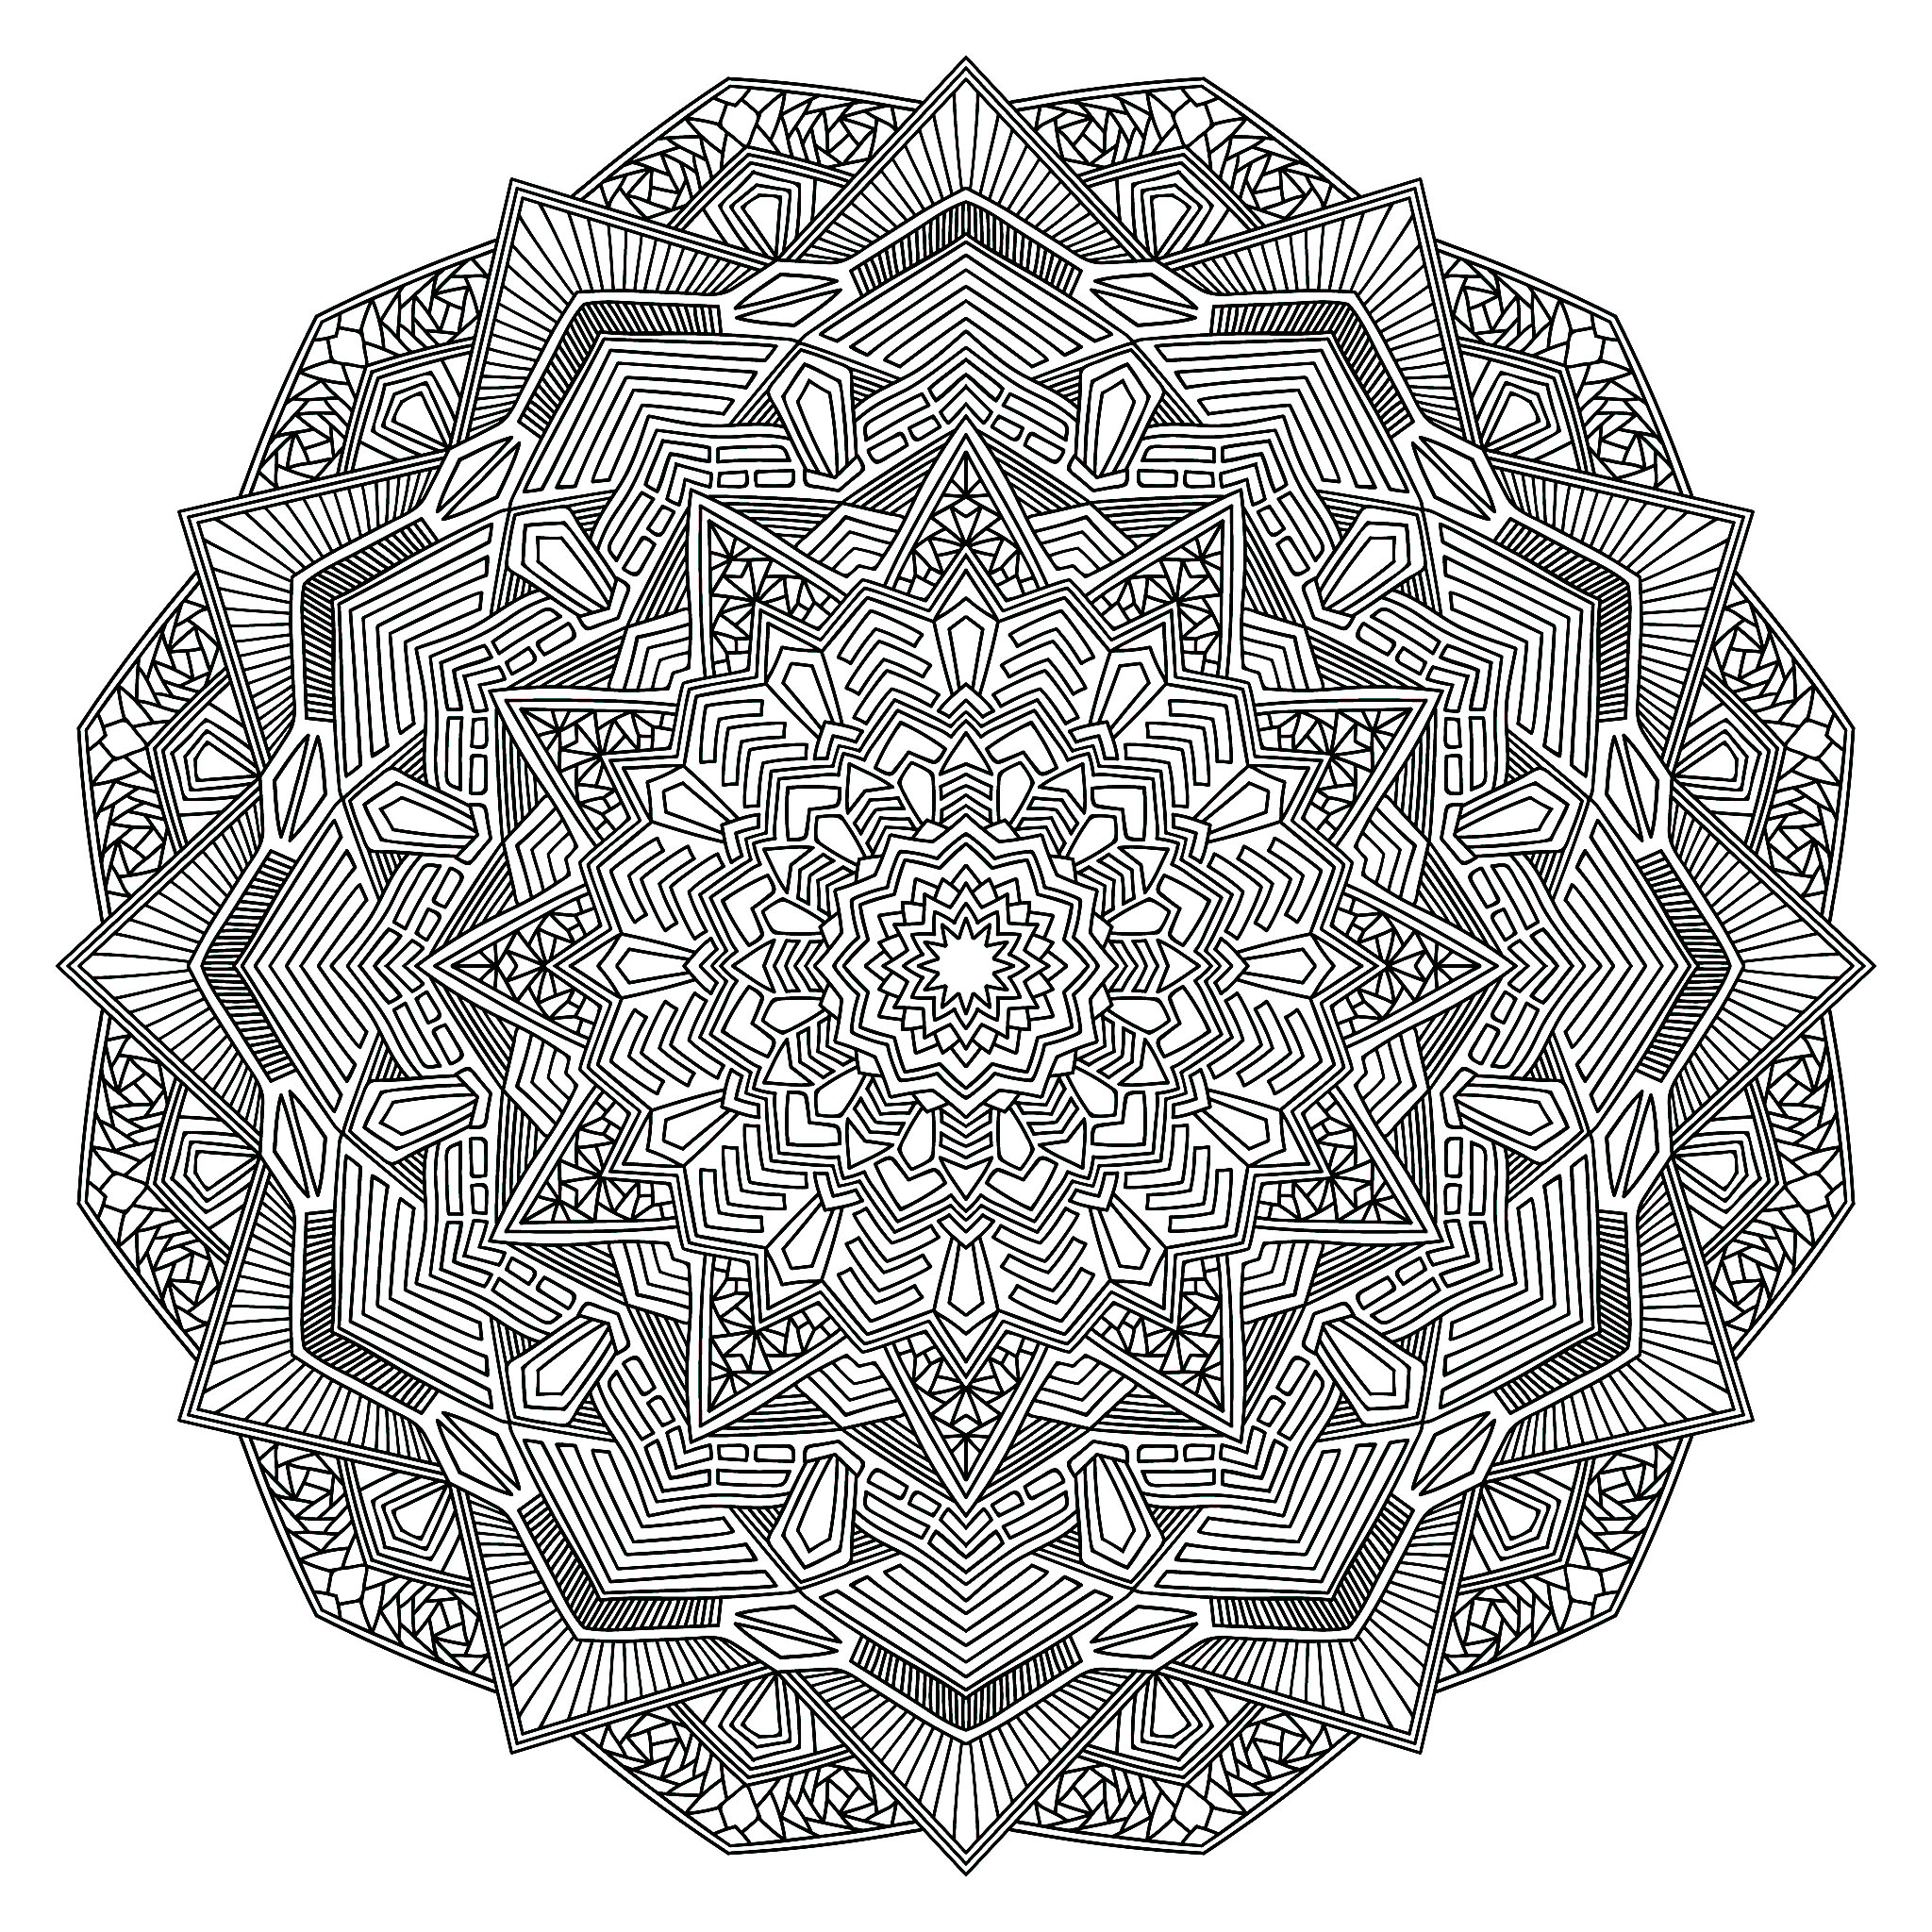 Esboço de uma mandala florida para colorir. Mandala preta intrincada, Fonte : 123rf   Artista : amovitania